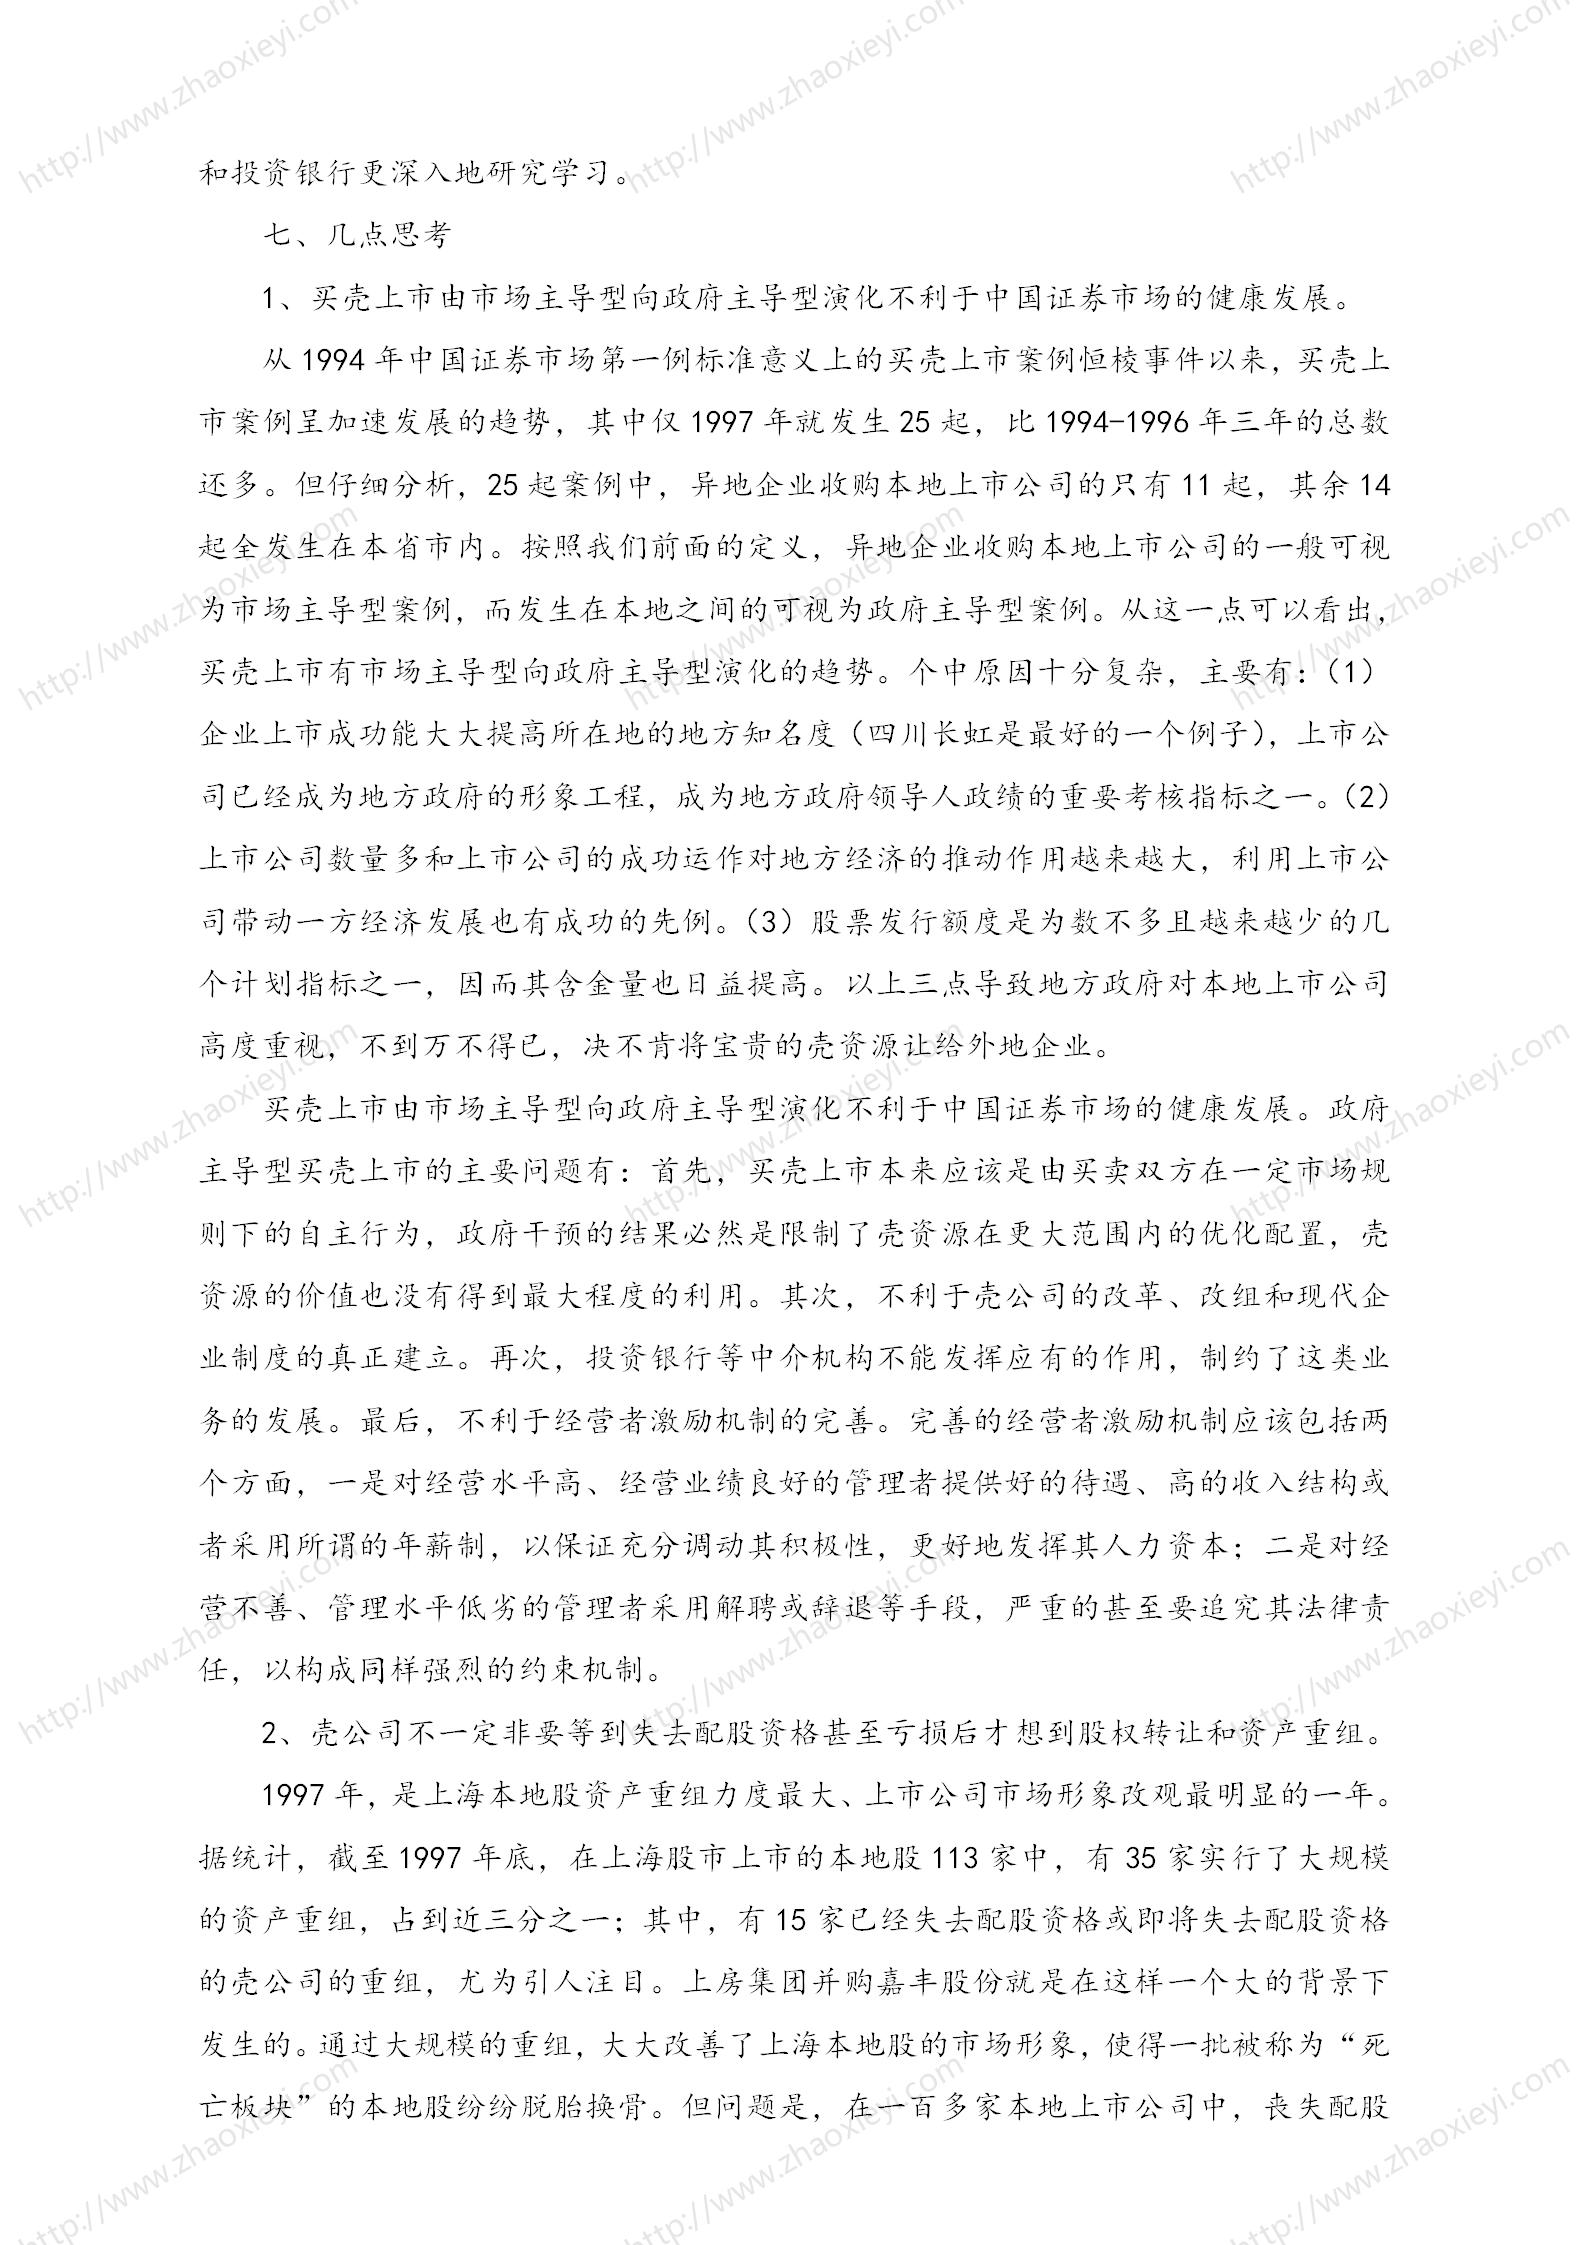 中国企业并购经典案例_113.jpg